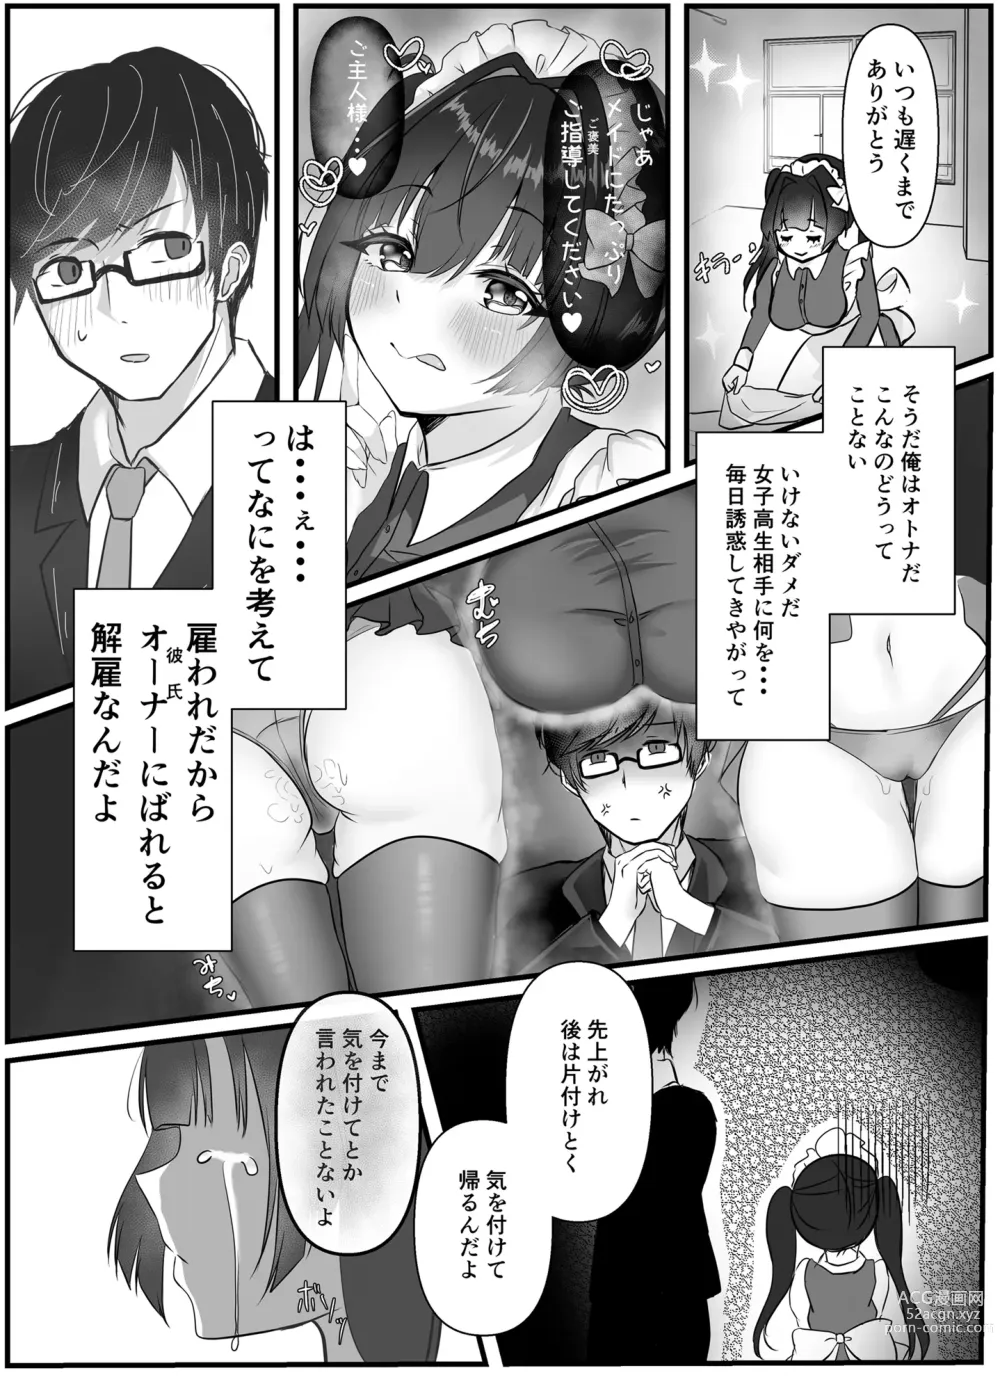 Page 6 of doujinshi Ikiri Maid no Zako Manko